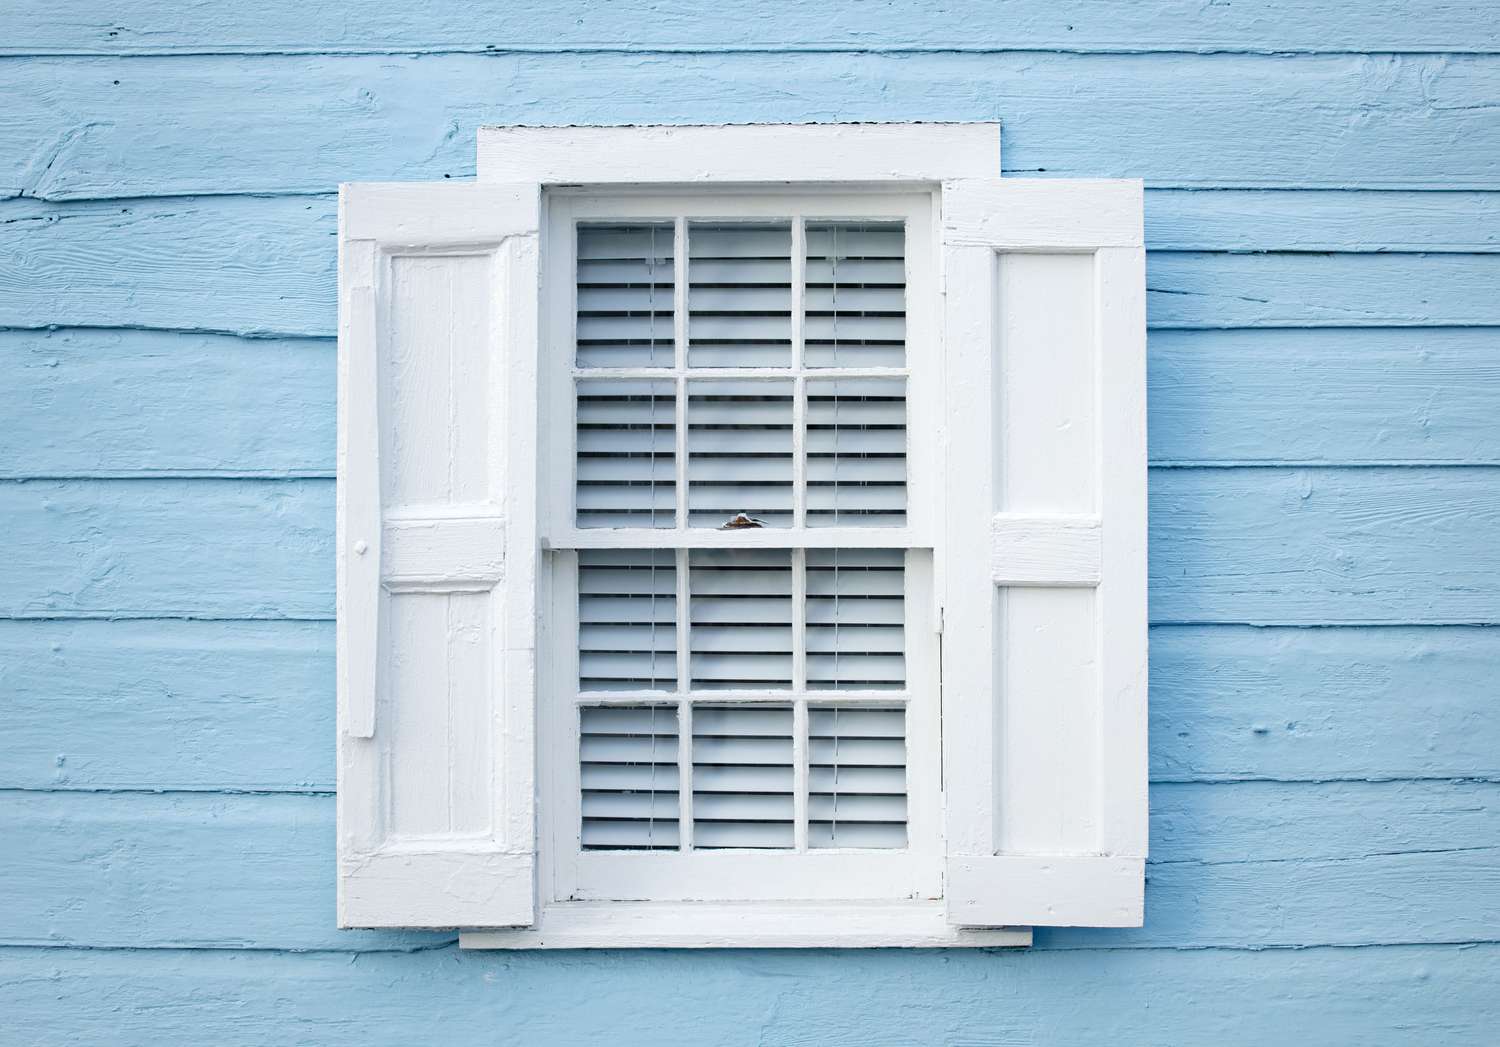 contraventanas planas blancas sobre ventana blanca y hogar azul